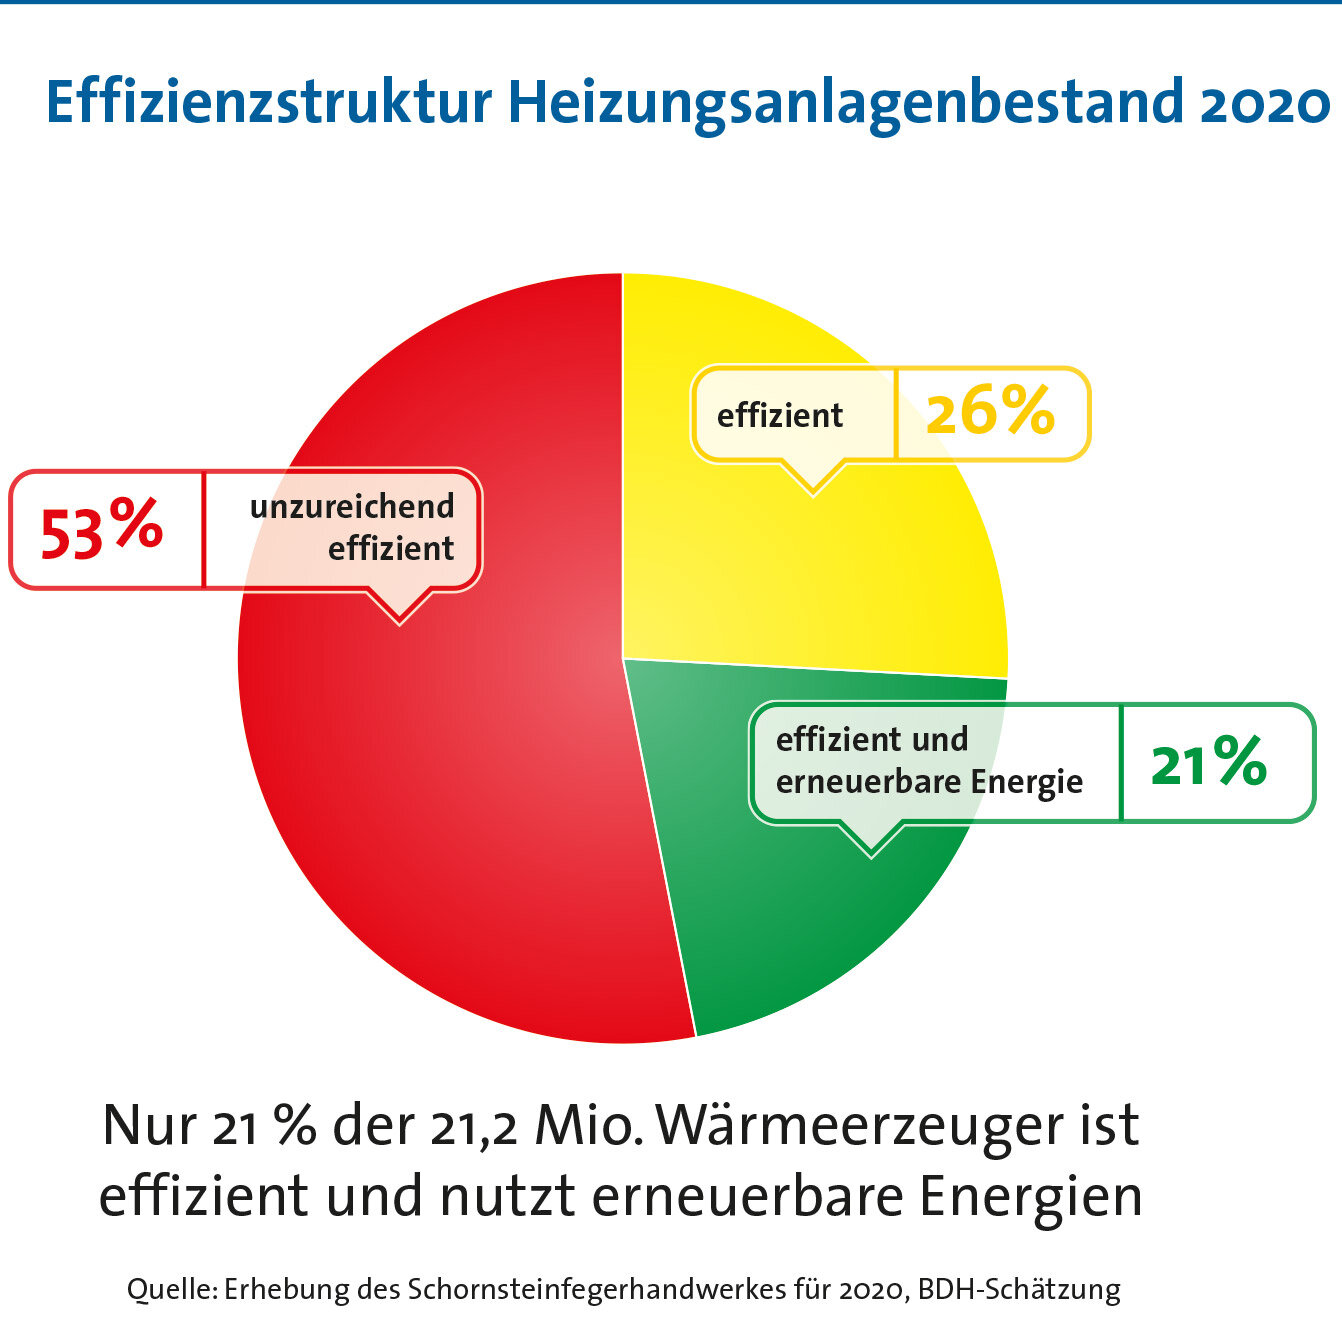 Diagramm: Effizienzstruktur Heizungsanlagenbestand 2020, Quelle: BDH